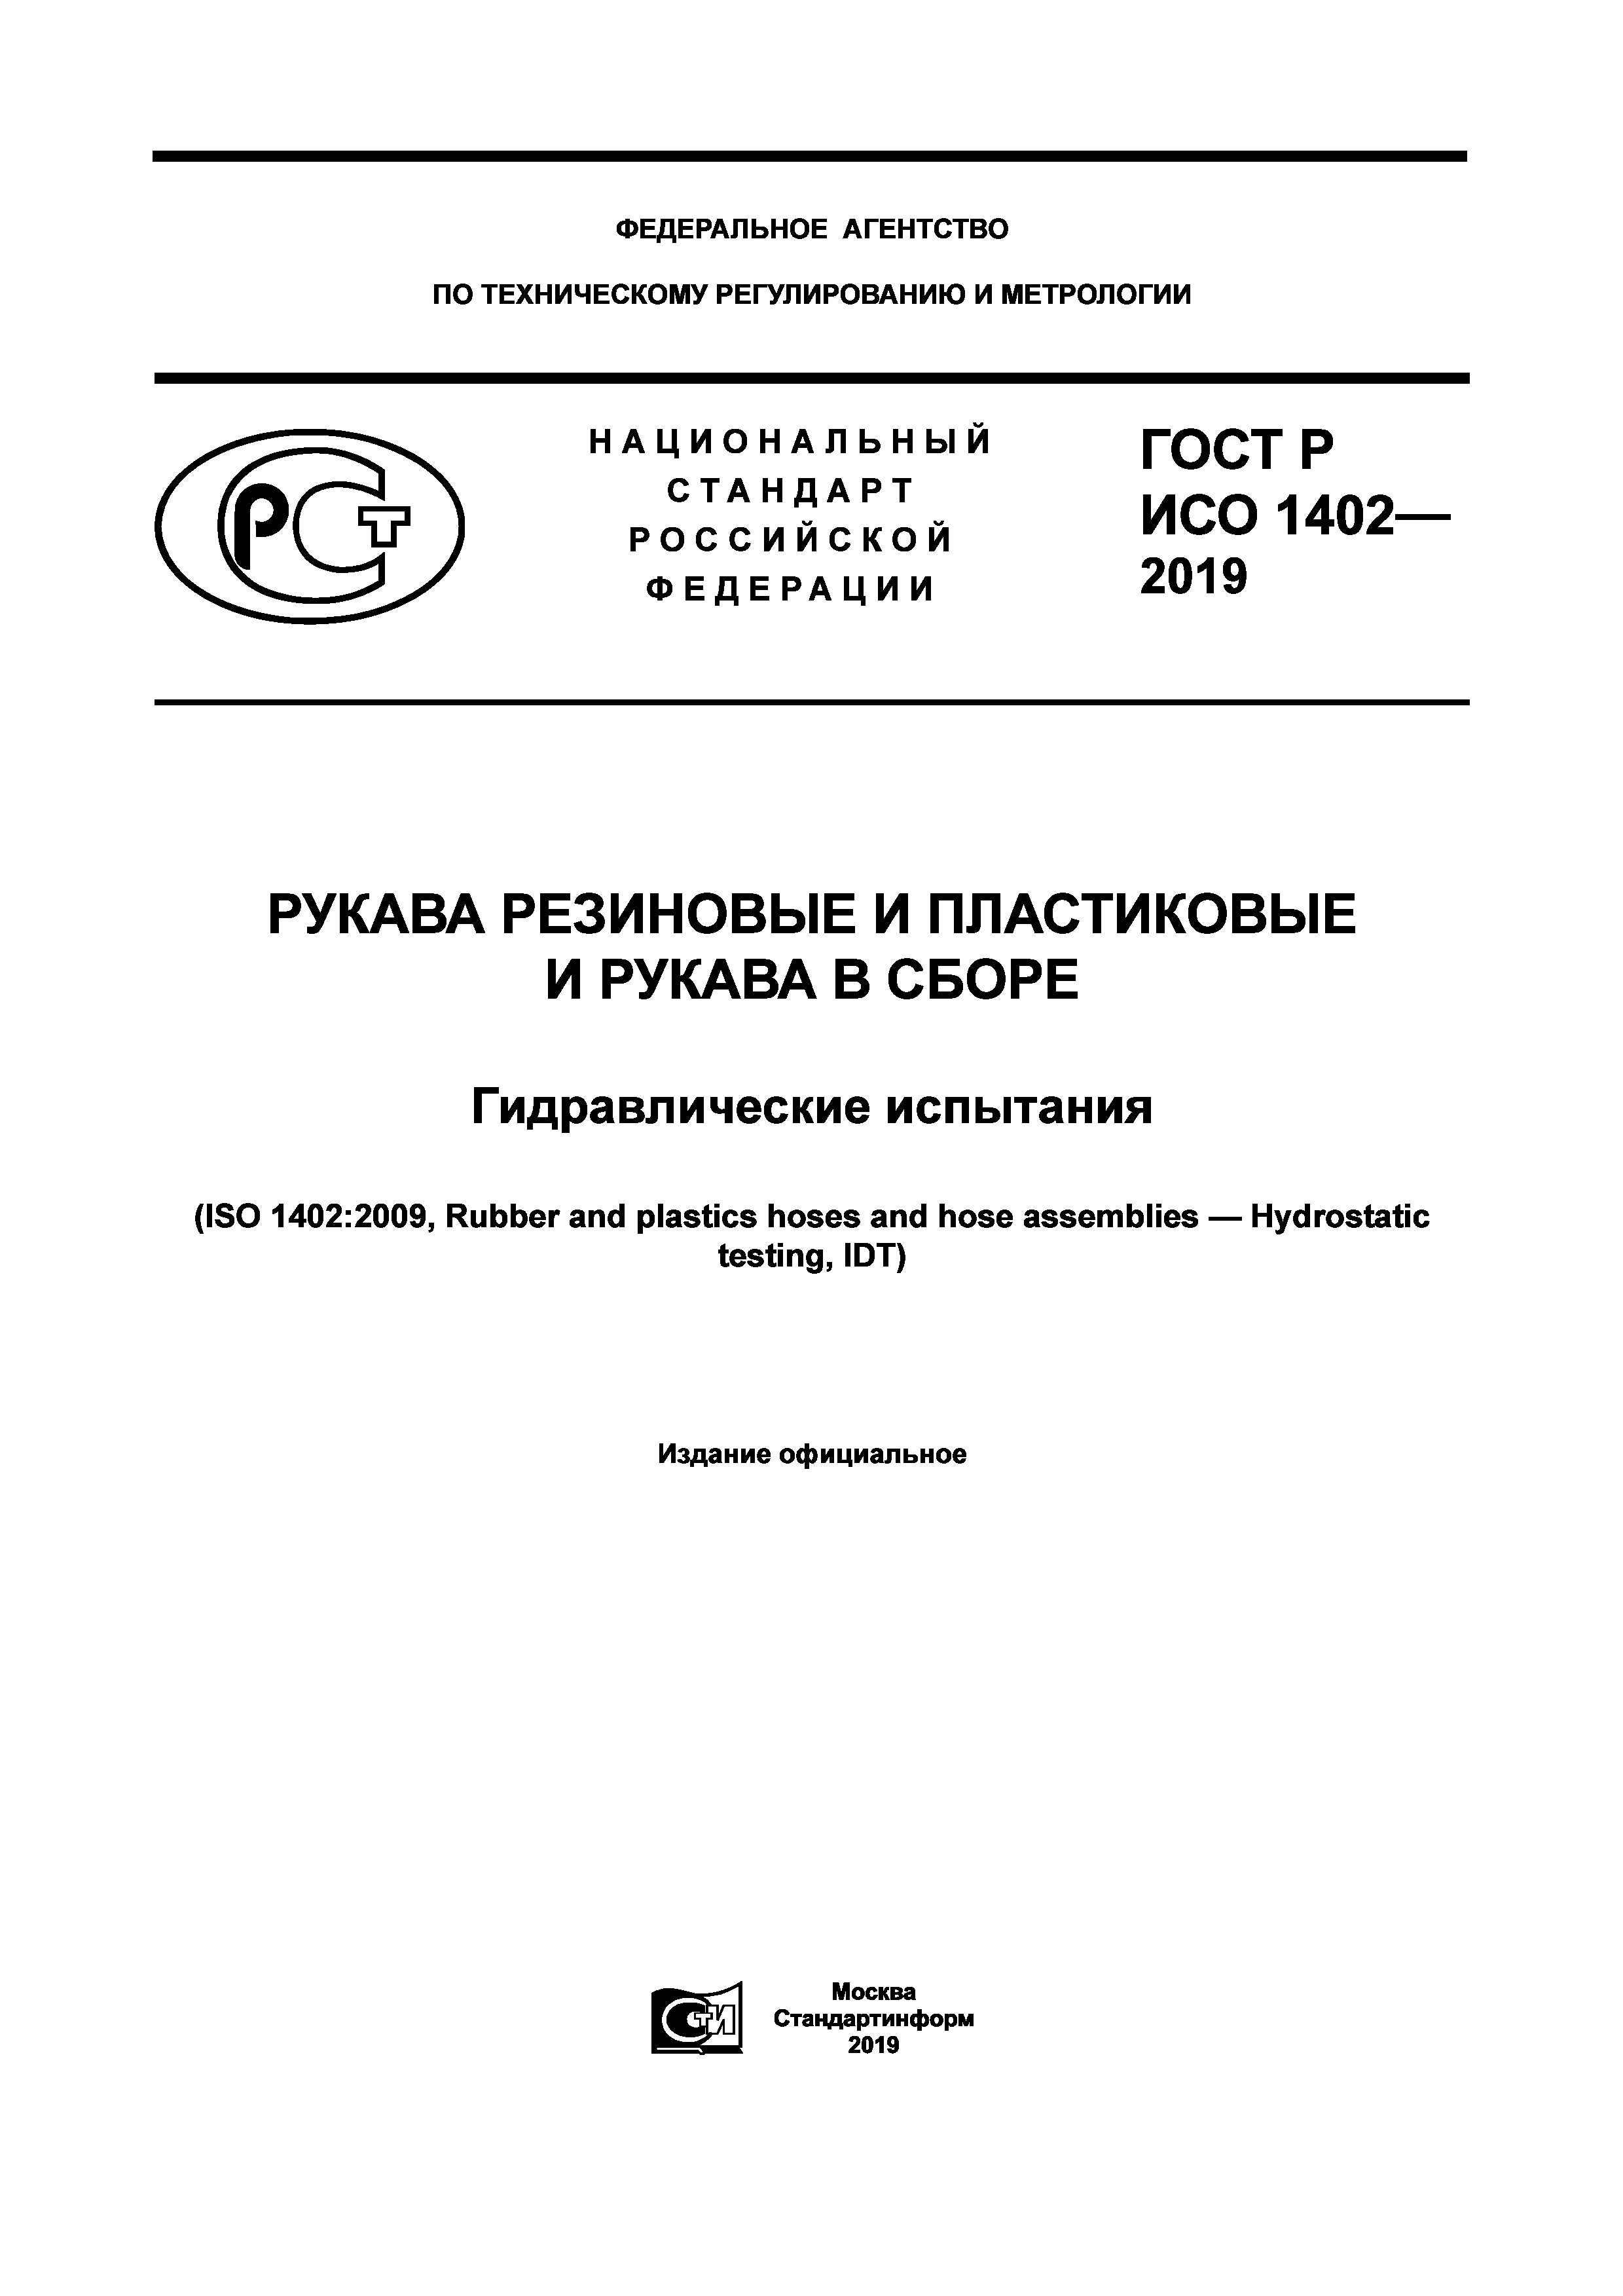 ГОСТ Р ИСО 1402-2019